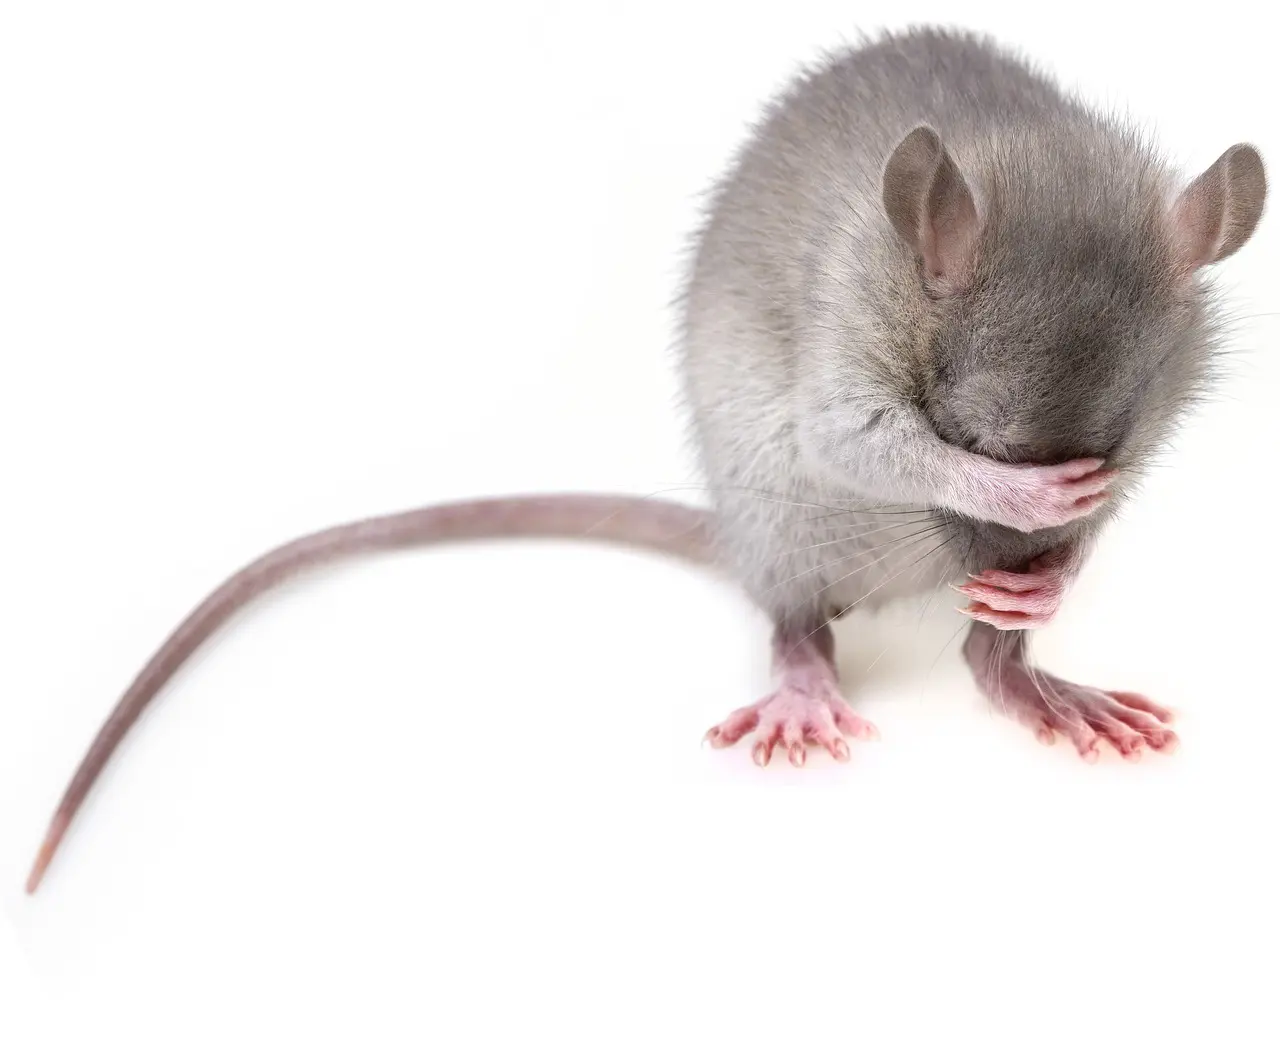 Ratten doen andere ratten liever geen pijn